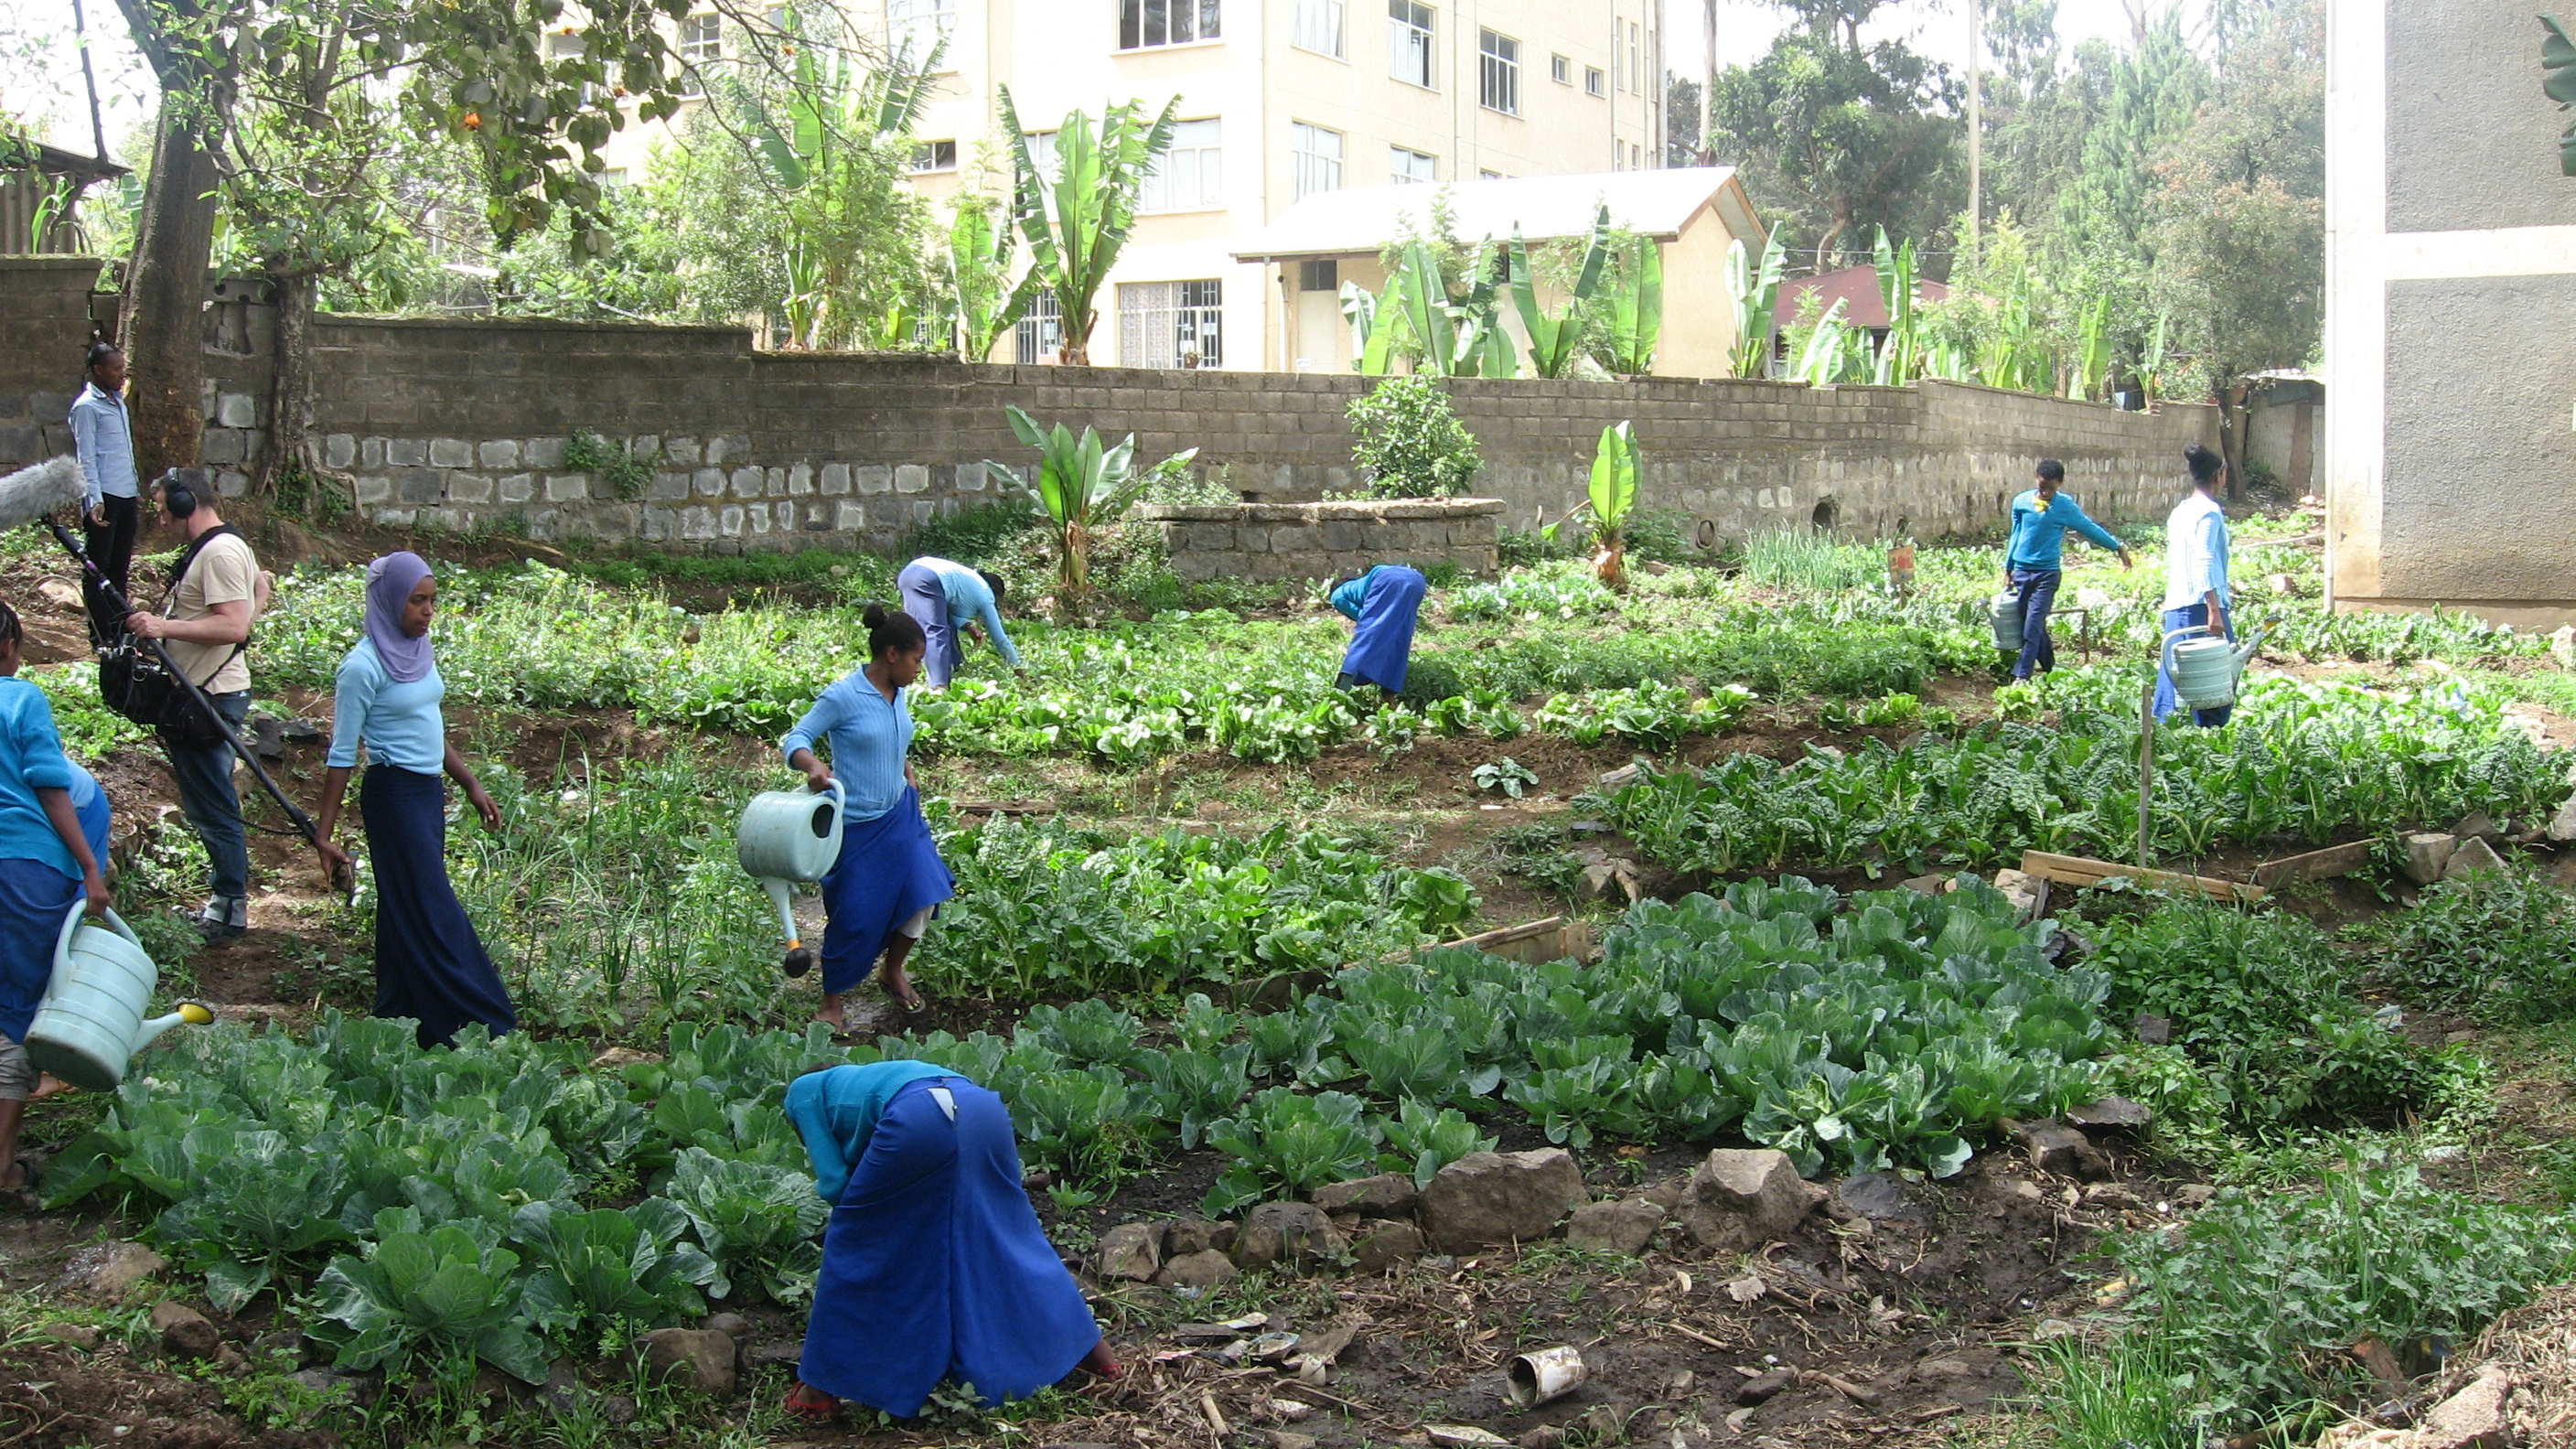 Students working at Meskerem School garden in Ethiopia